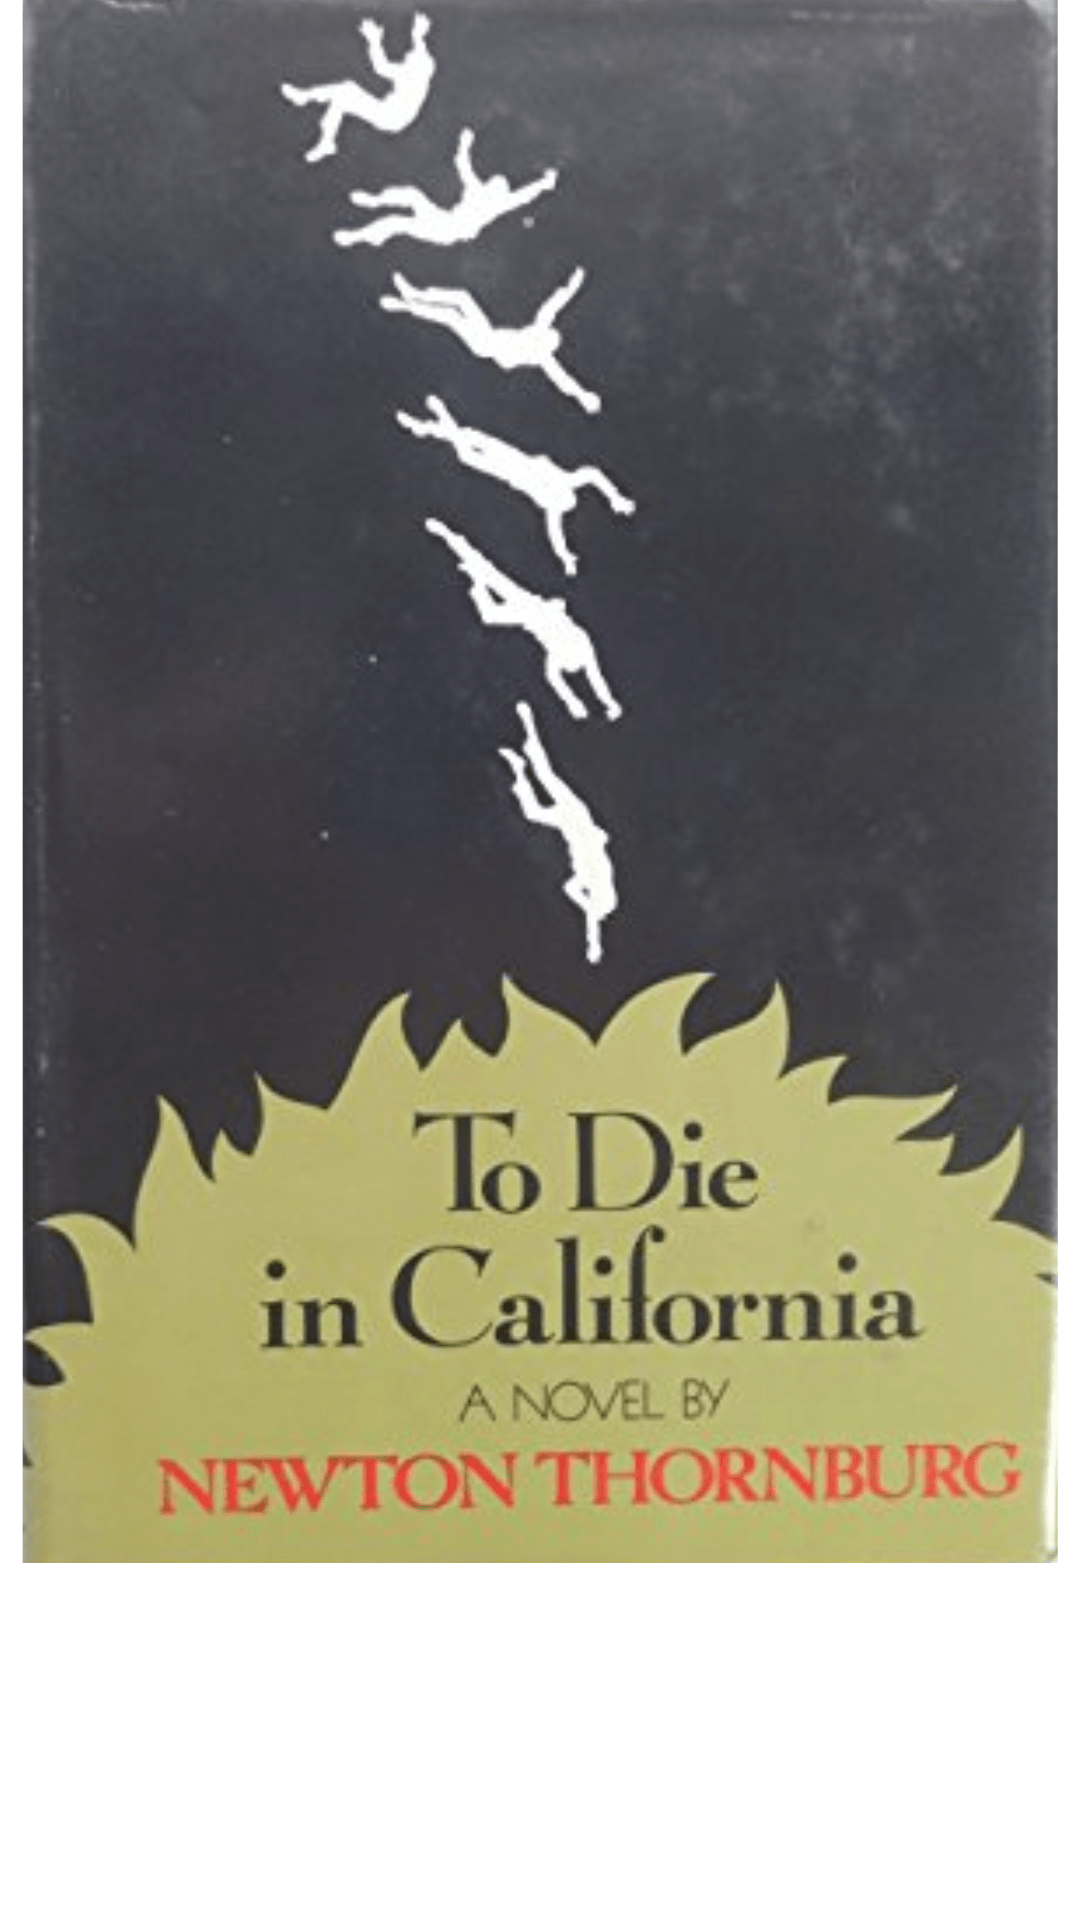 To Die in California